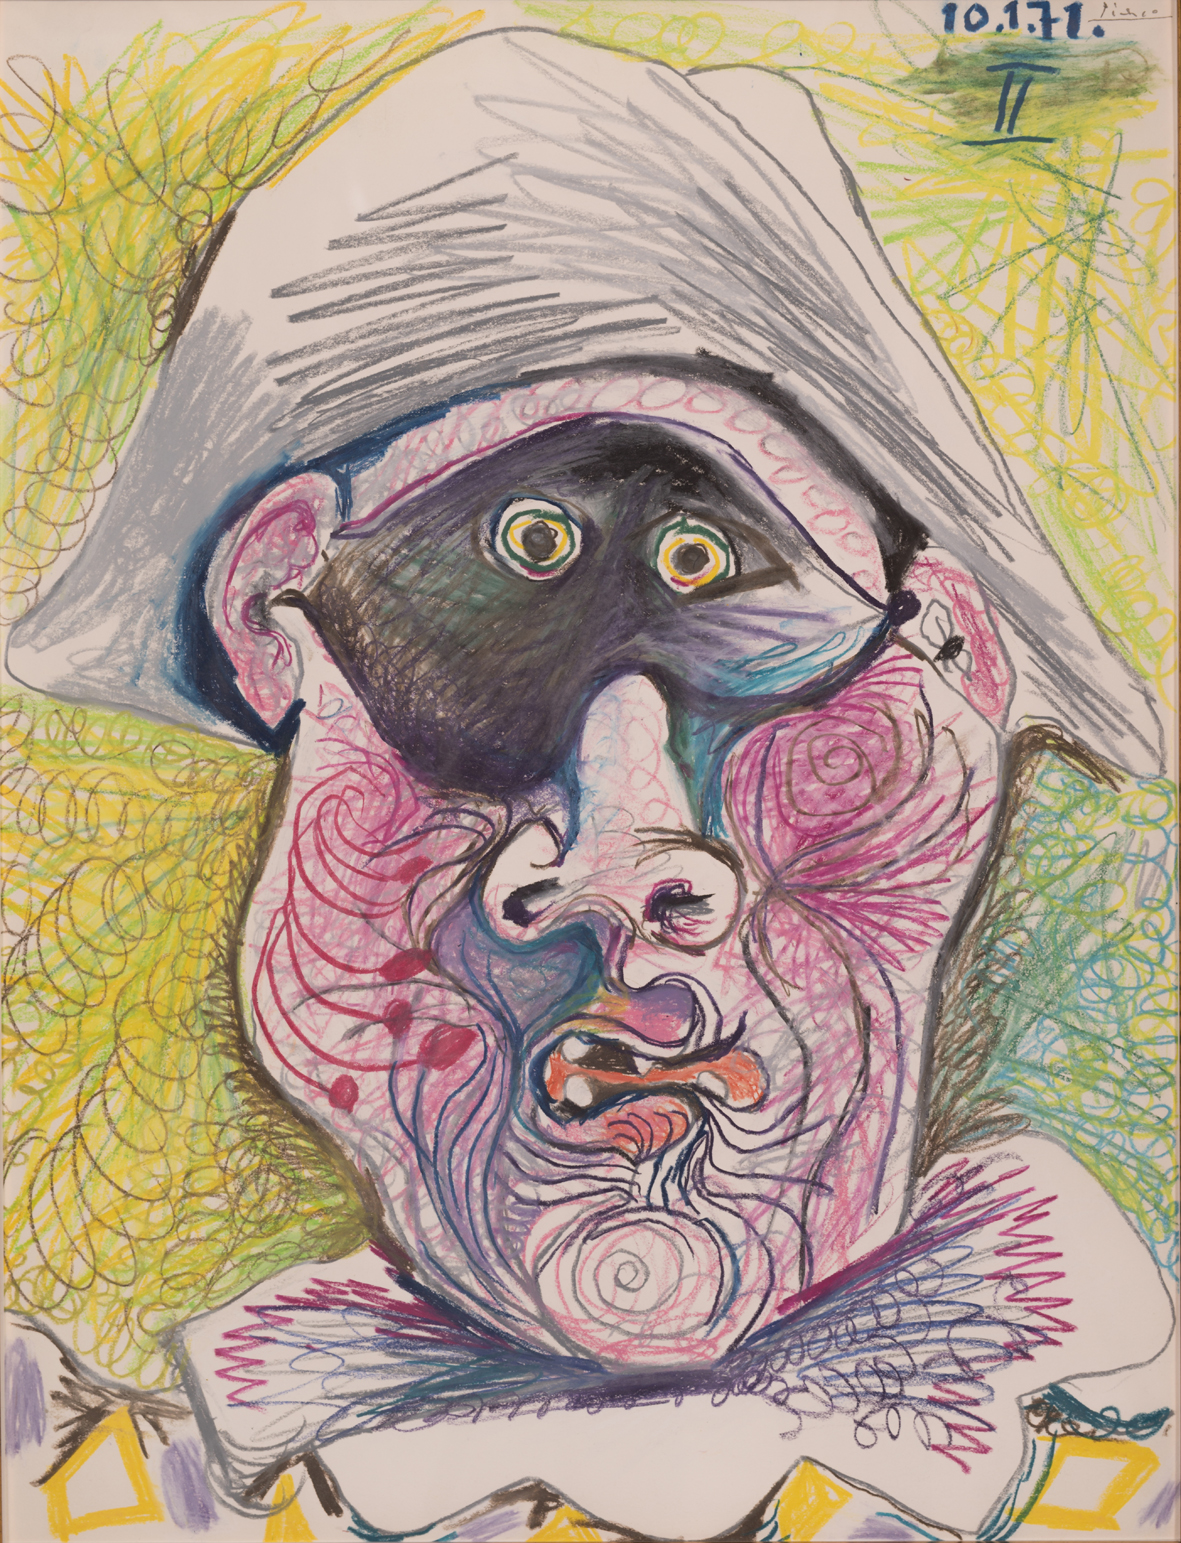 Pablo Picasso, Testa di Arlecchino II, 1971, matita e pastello su carta